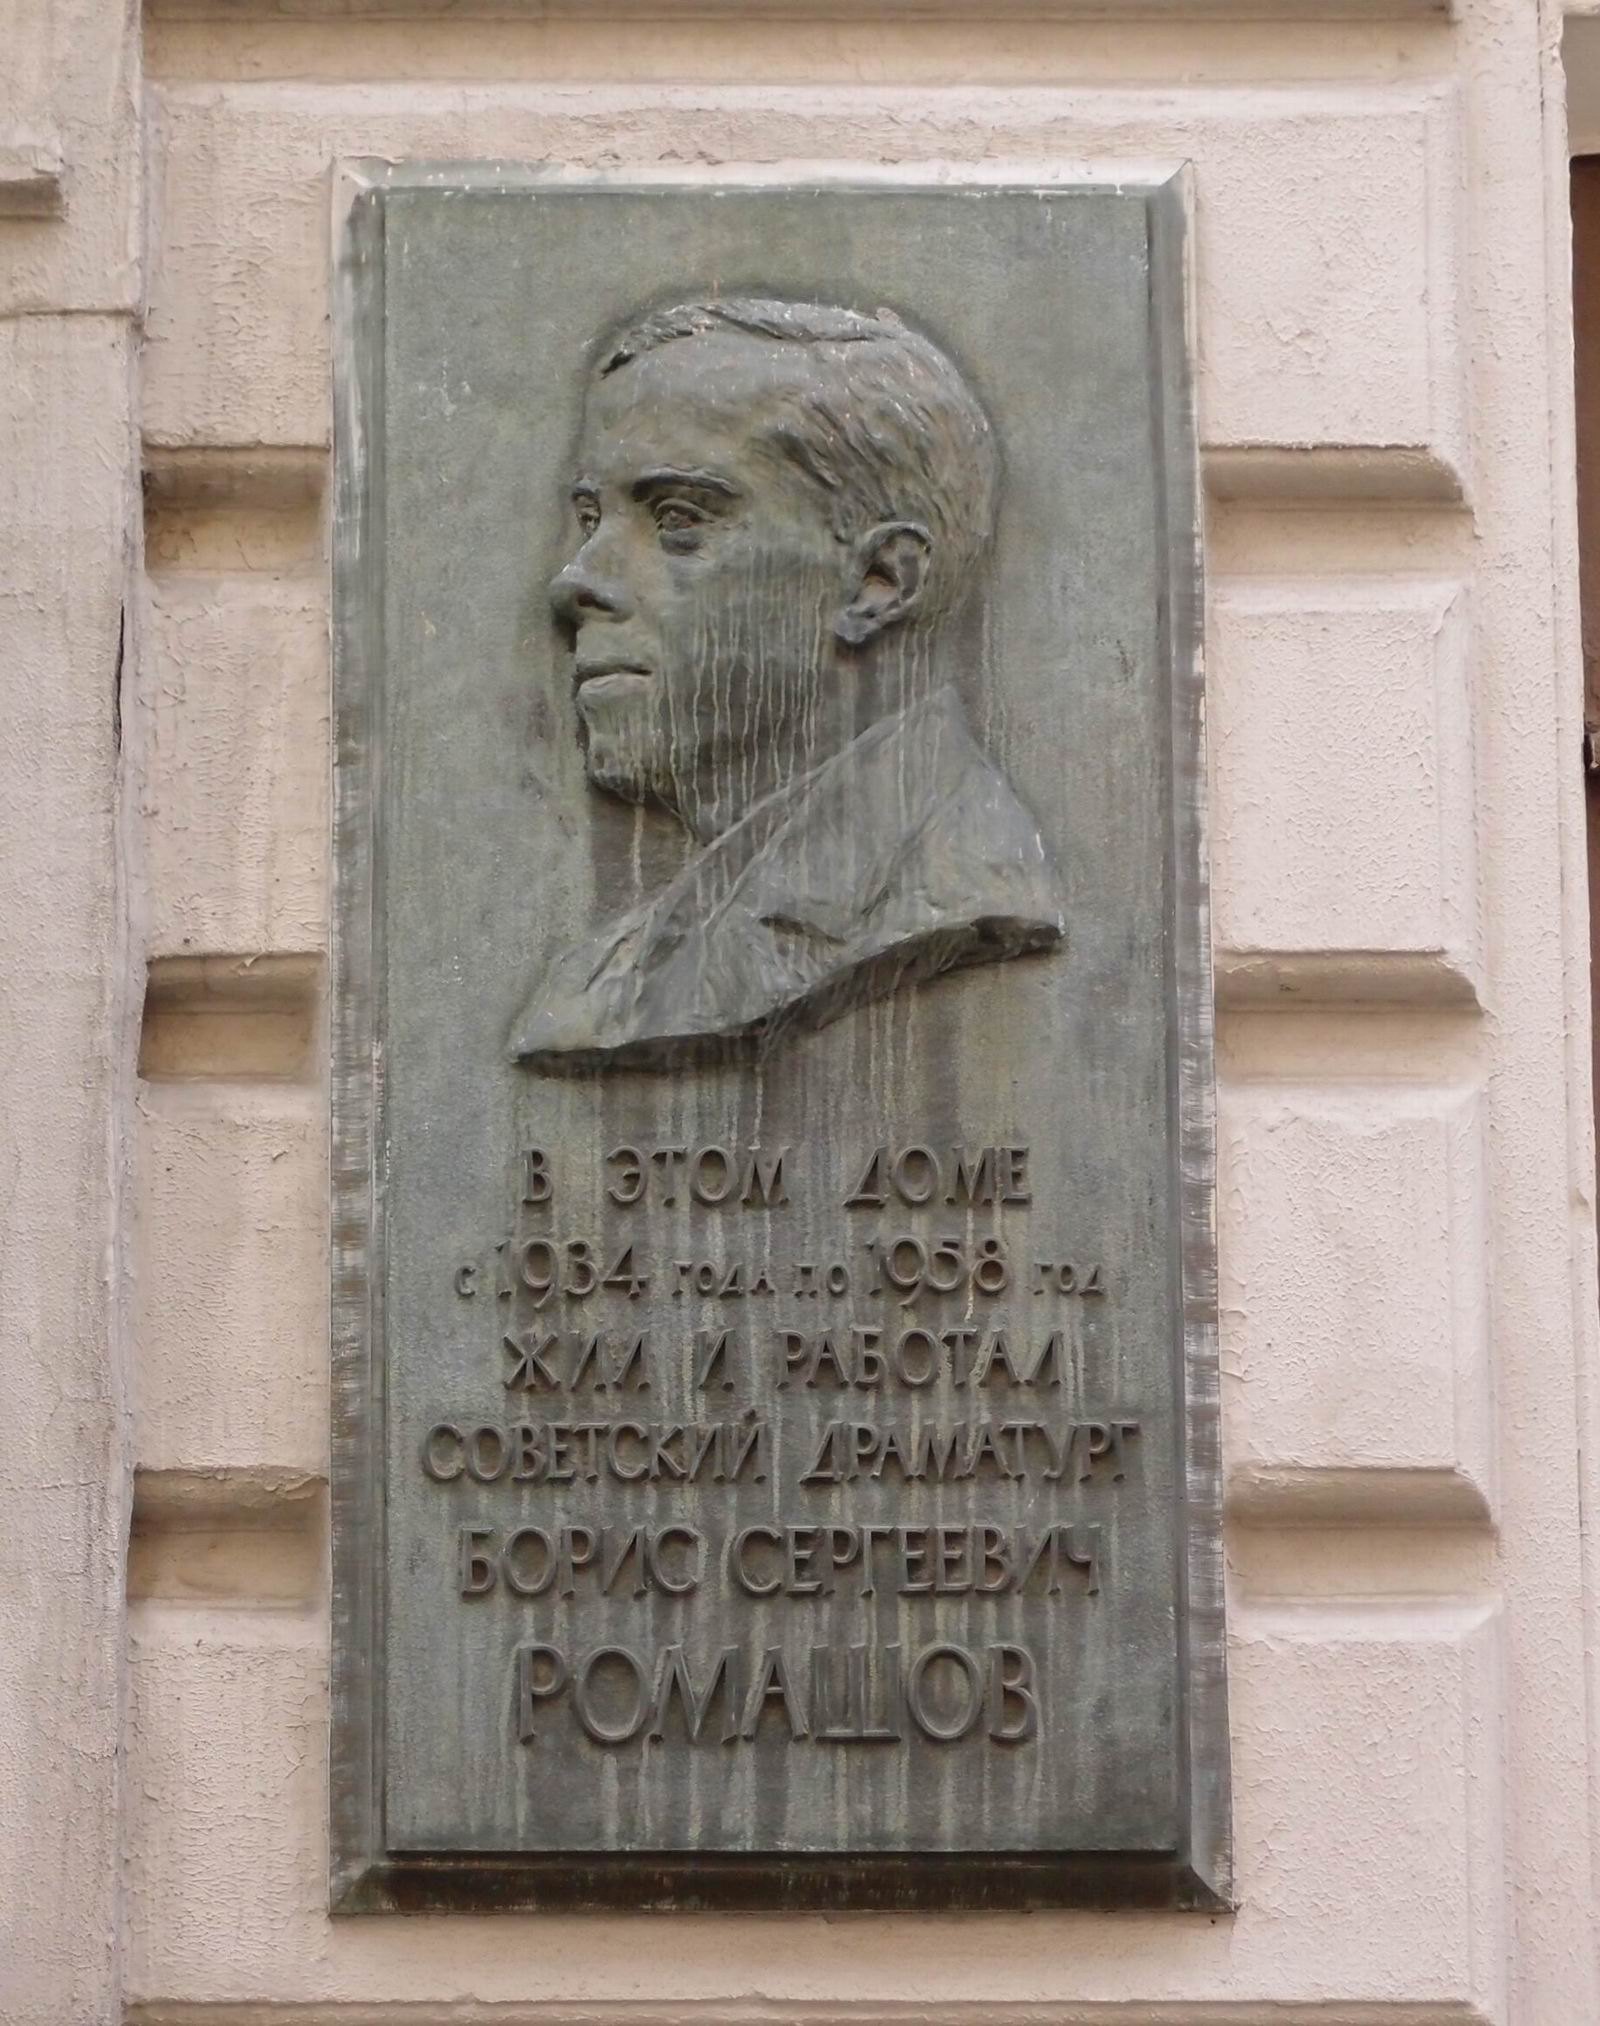 Мемориальная доска Ромашову Б.С. (1895–1958), ск. Н.И.Нисс-Гольдман, в Нижнем Кисловском переулке, дом 8.